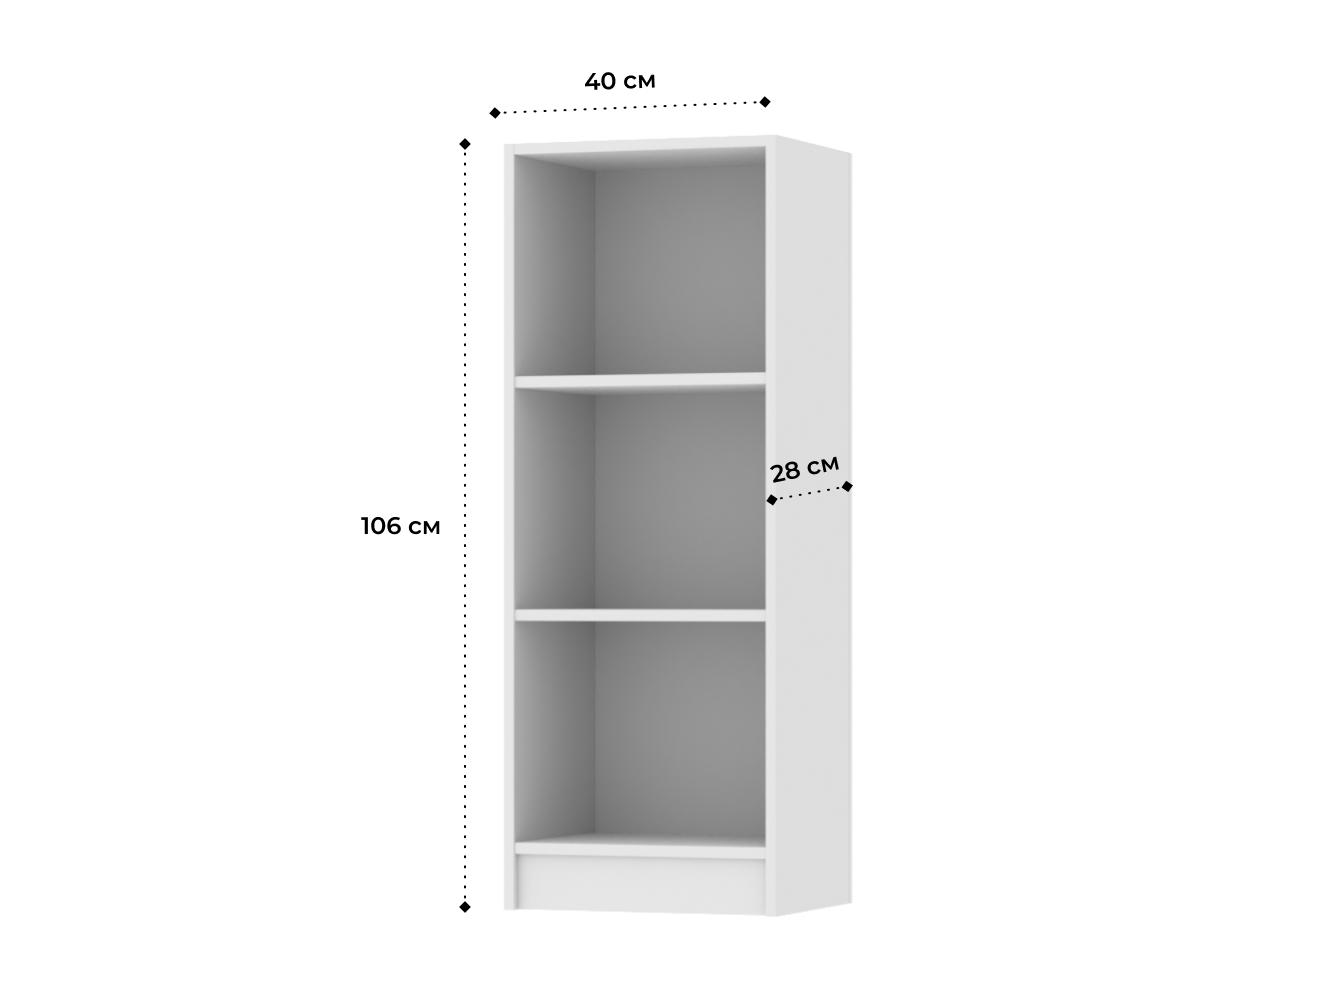  Стеллаж Билли 117 white ИКЕА (IKEA) изображение товара